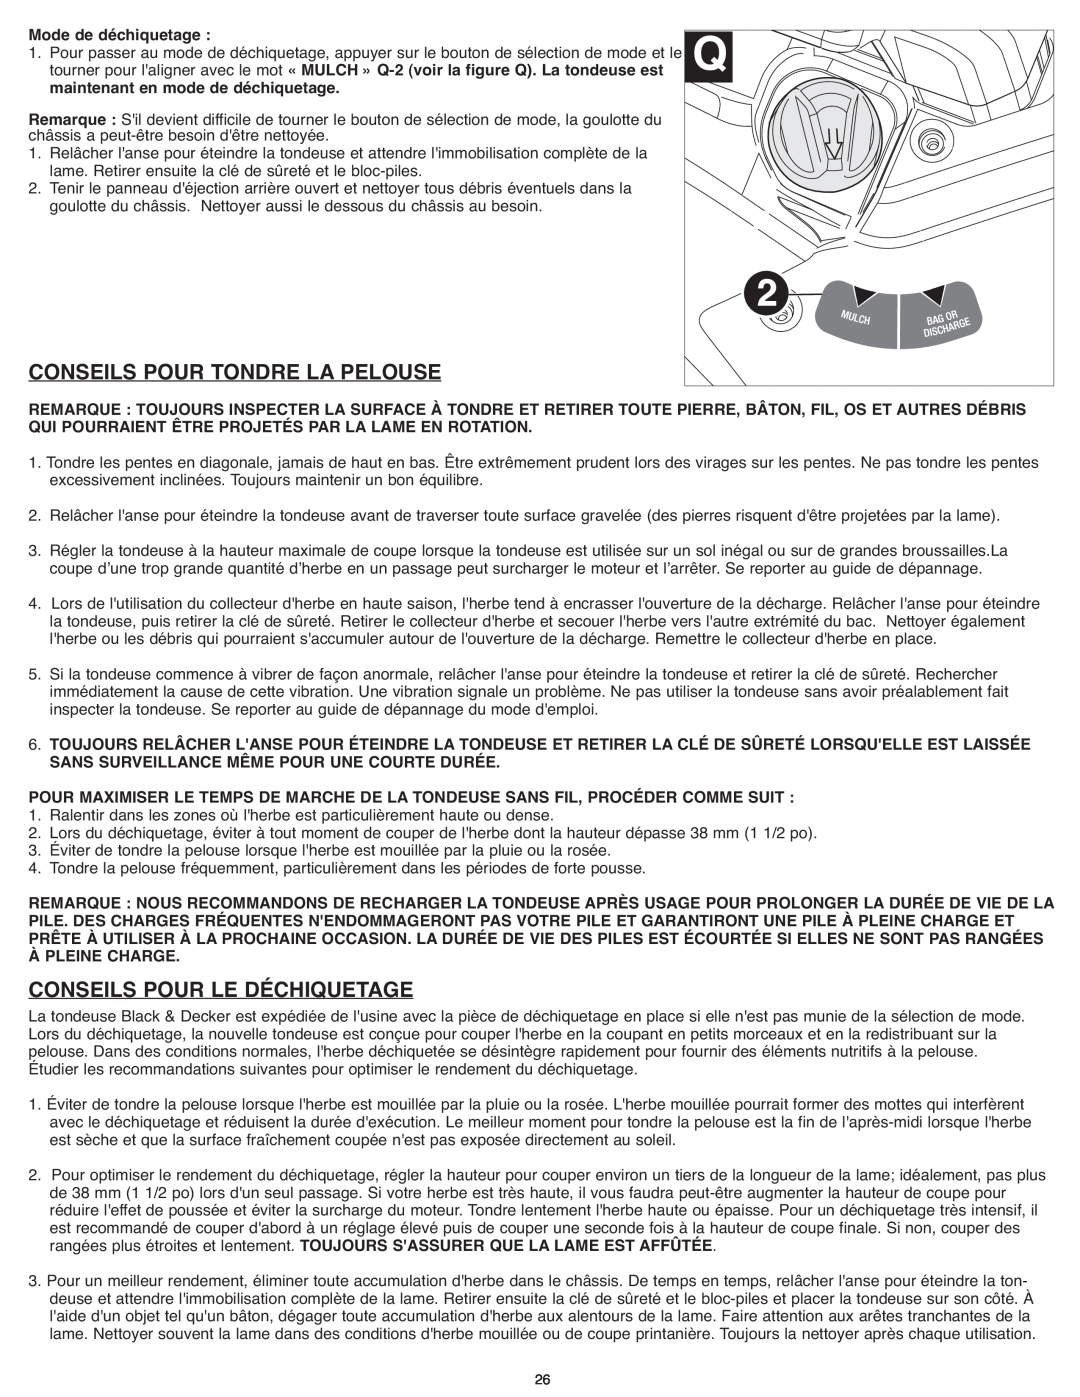 Black & Decker CM1936ZF2 instruction manual Conseils Pour Tondre La Pelouse, Conseils Pour Le Déchiquetage 